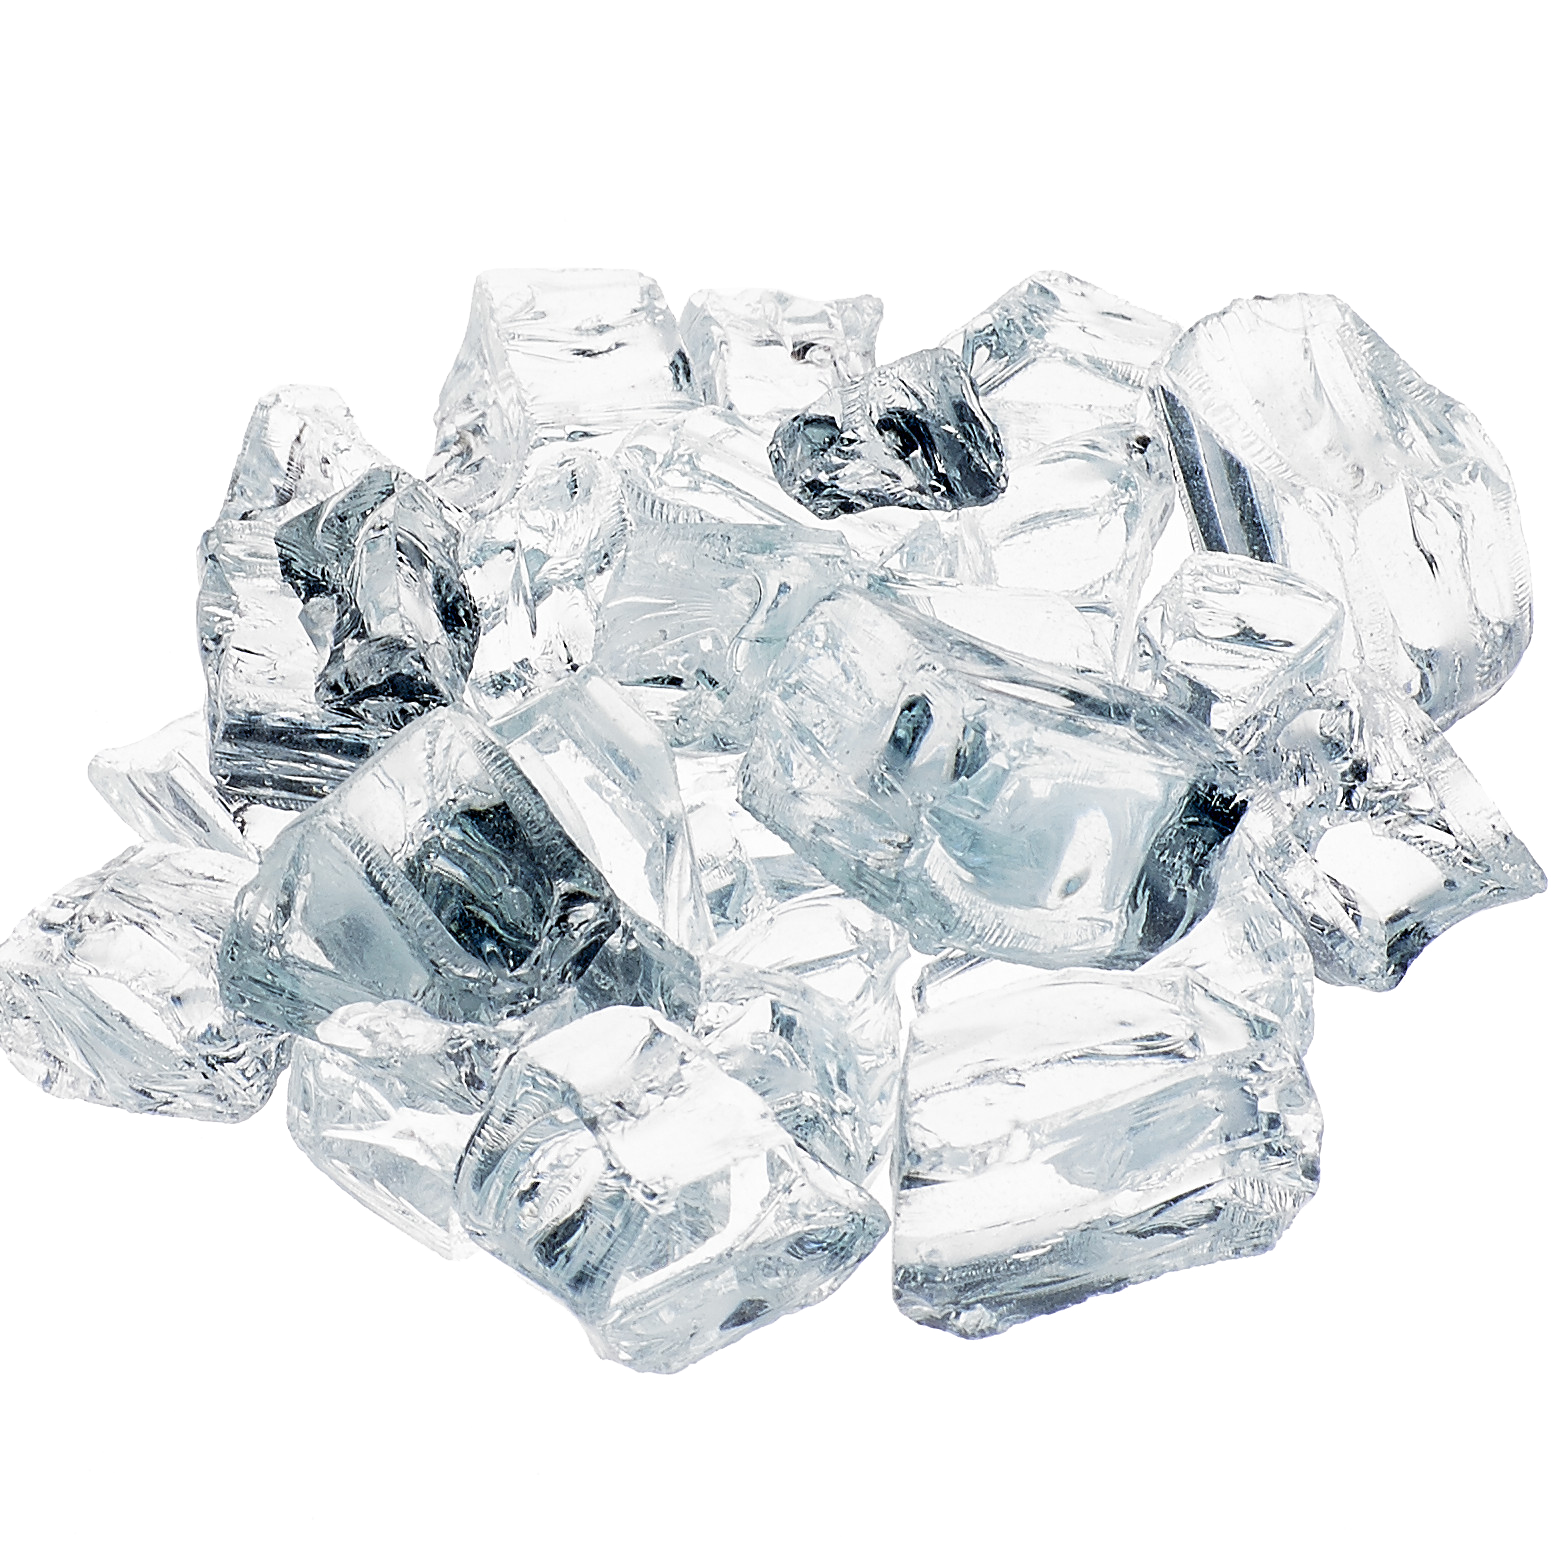 Krystallo Diamond